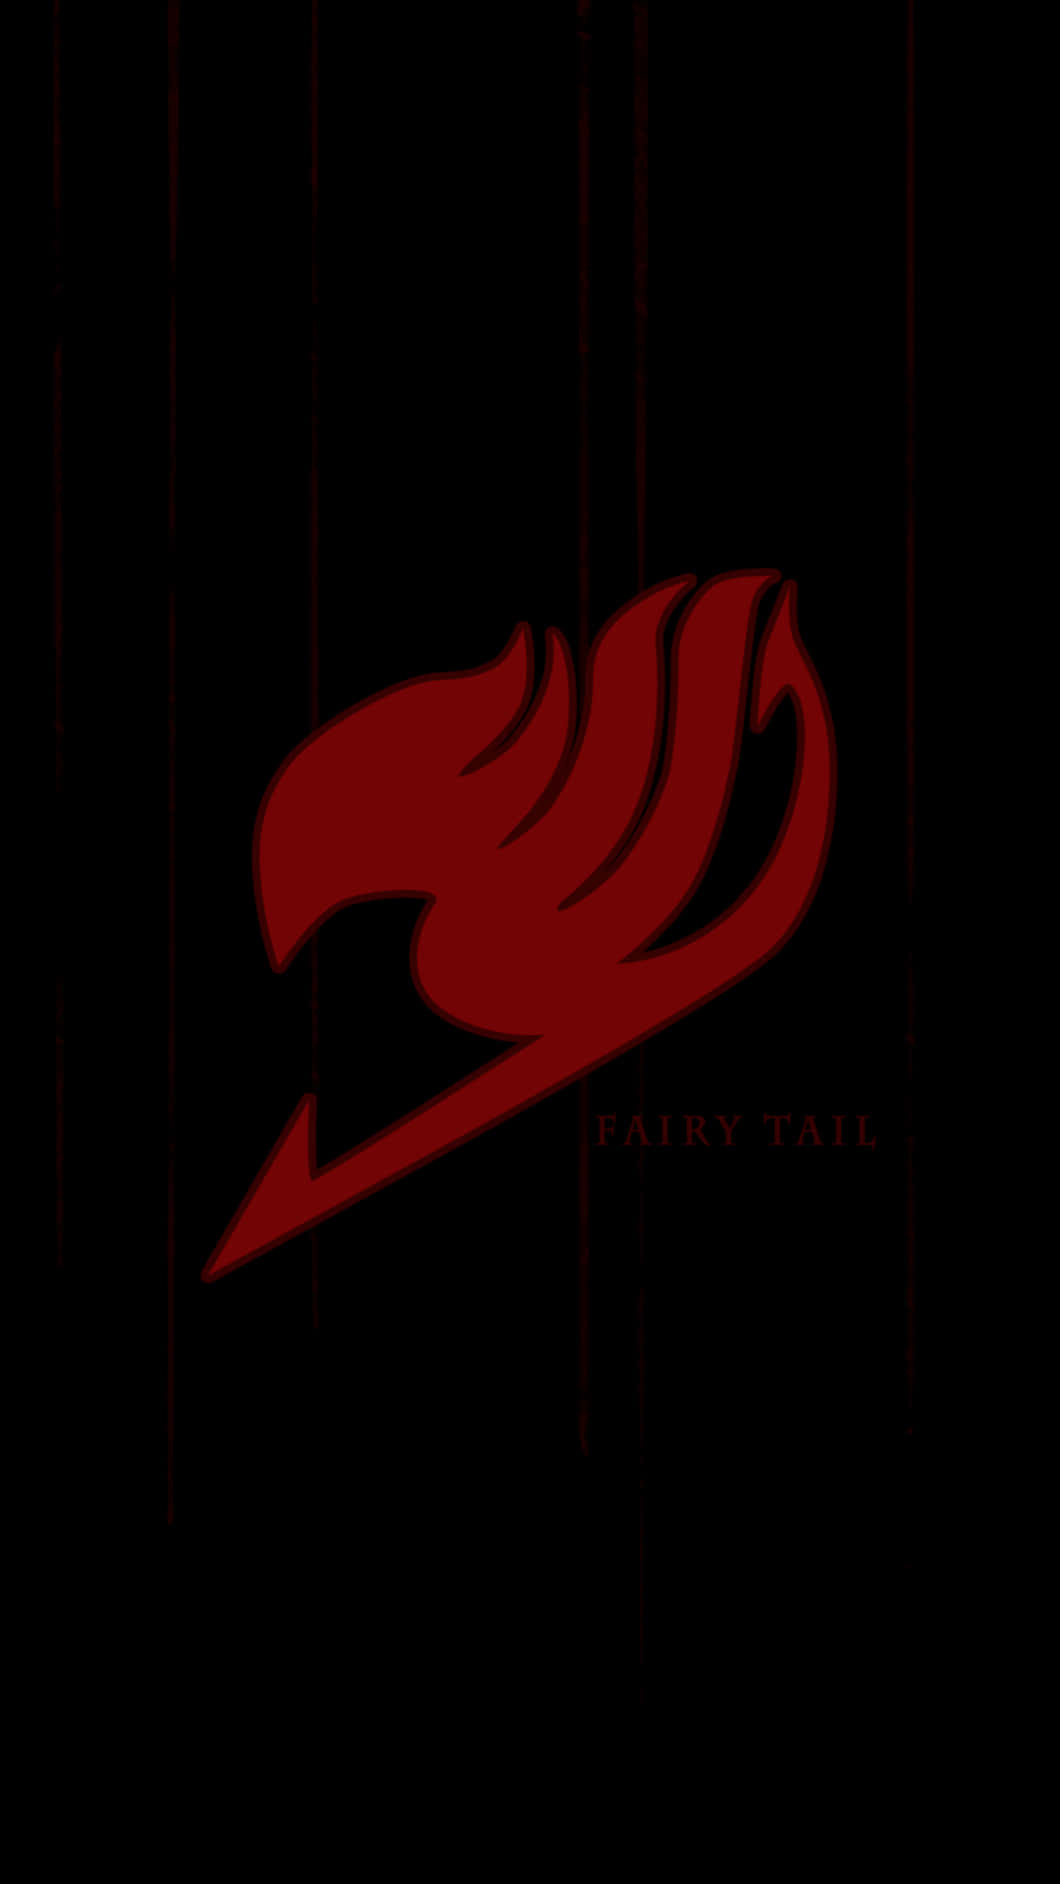 Fairytail Iphone Logo Schwarzes Design Wallpaper